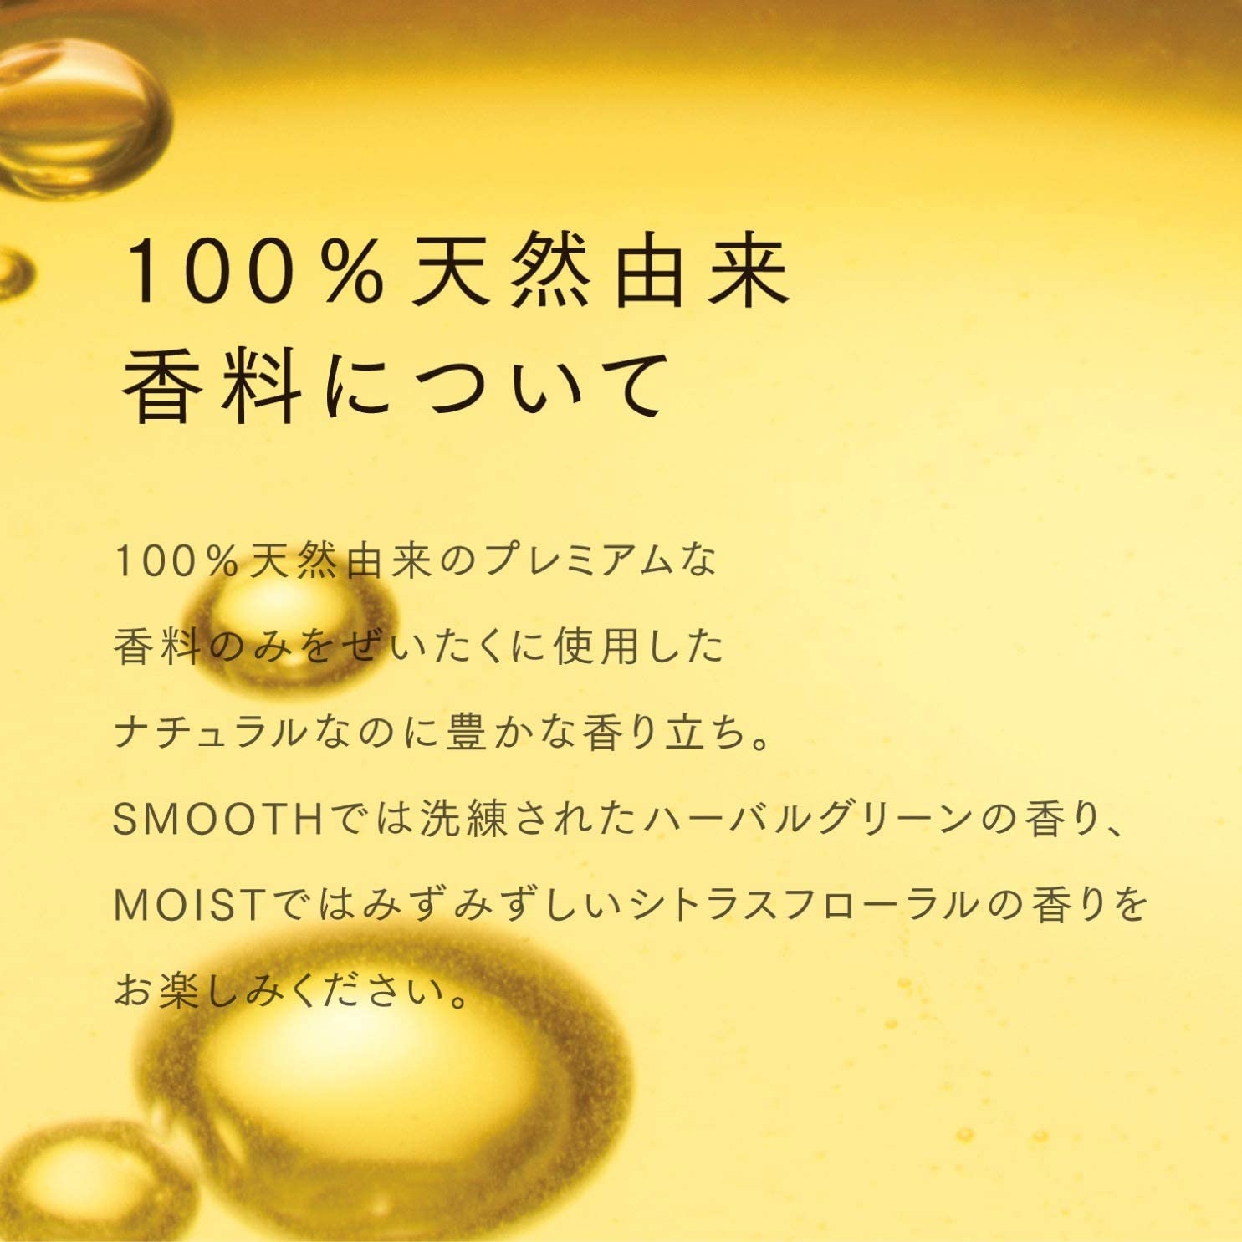 いち髪(ICHIKAMI) ナチュラルケアセレクト モイスト シャンプーの商品画像3 